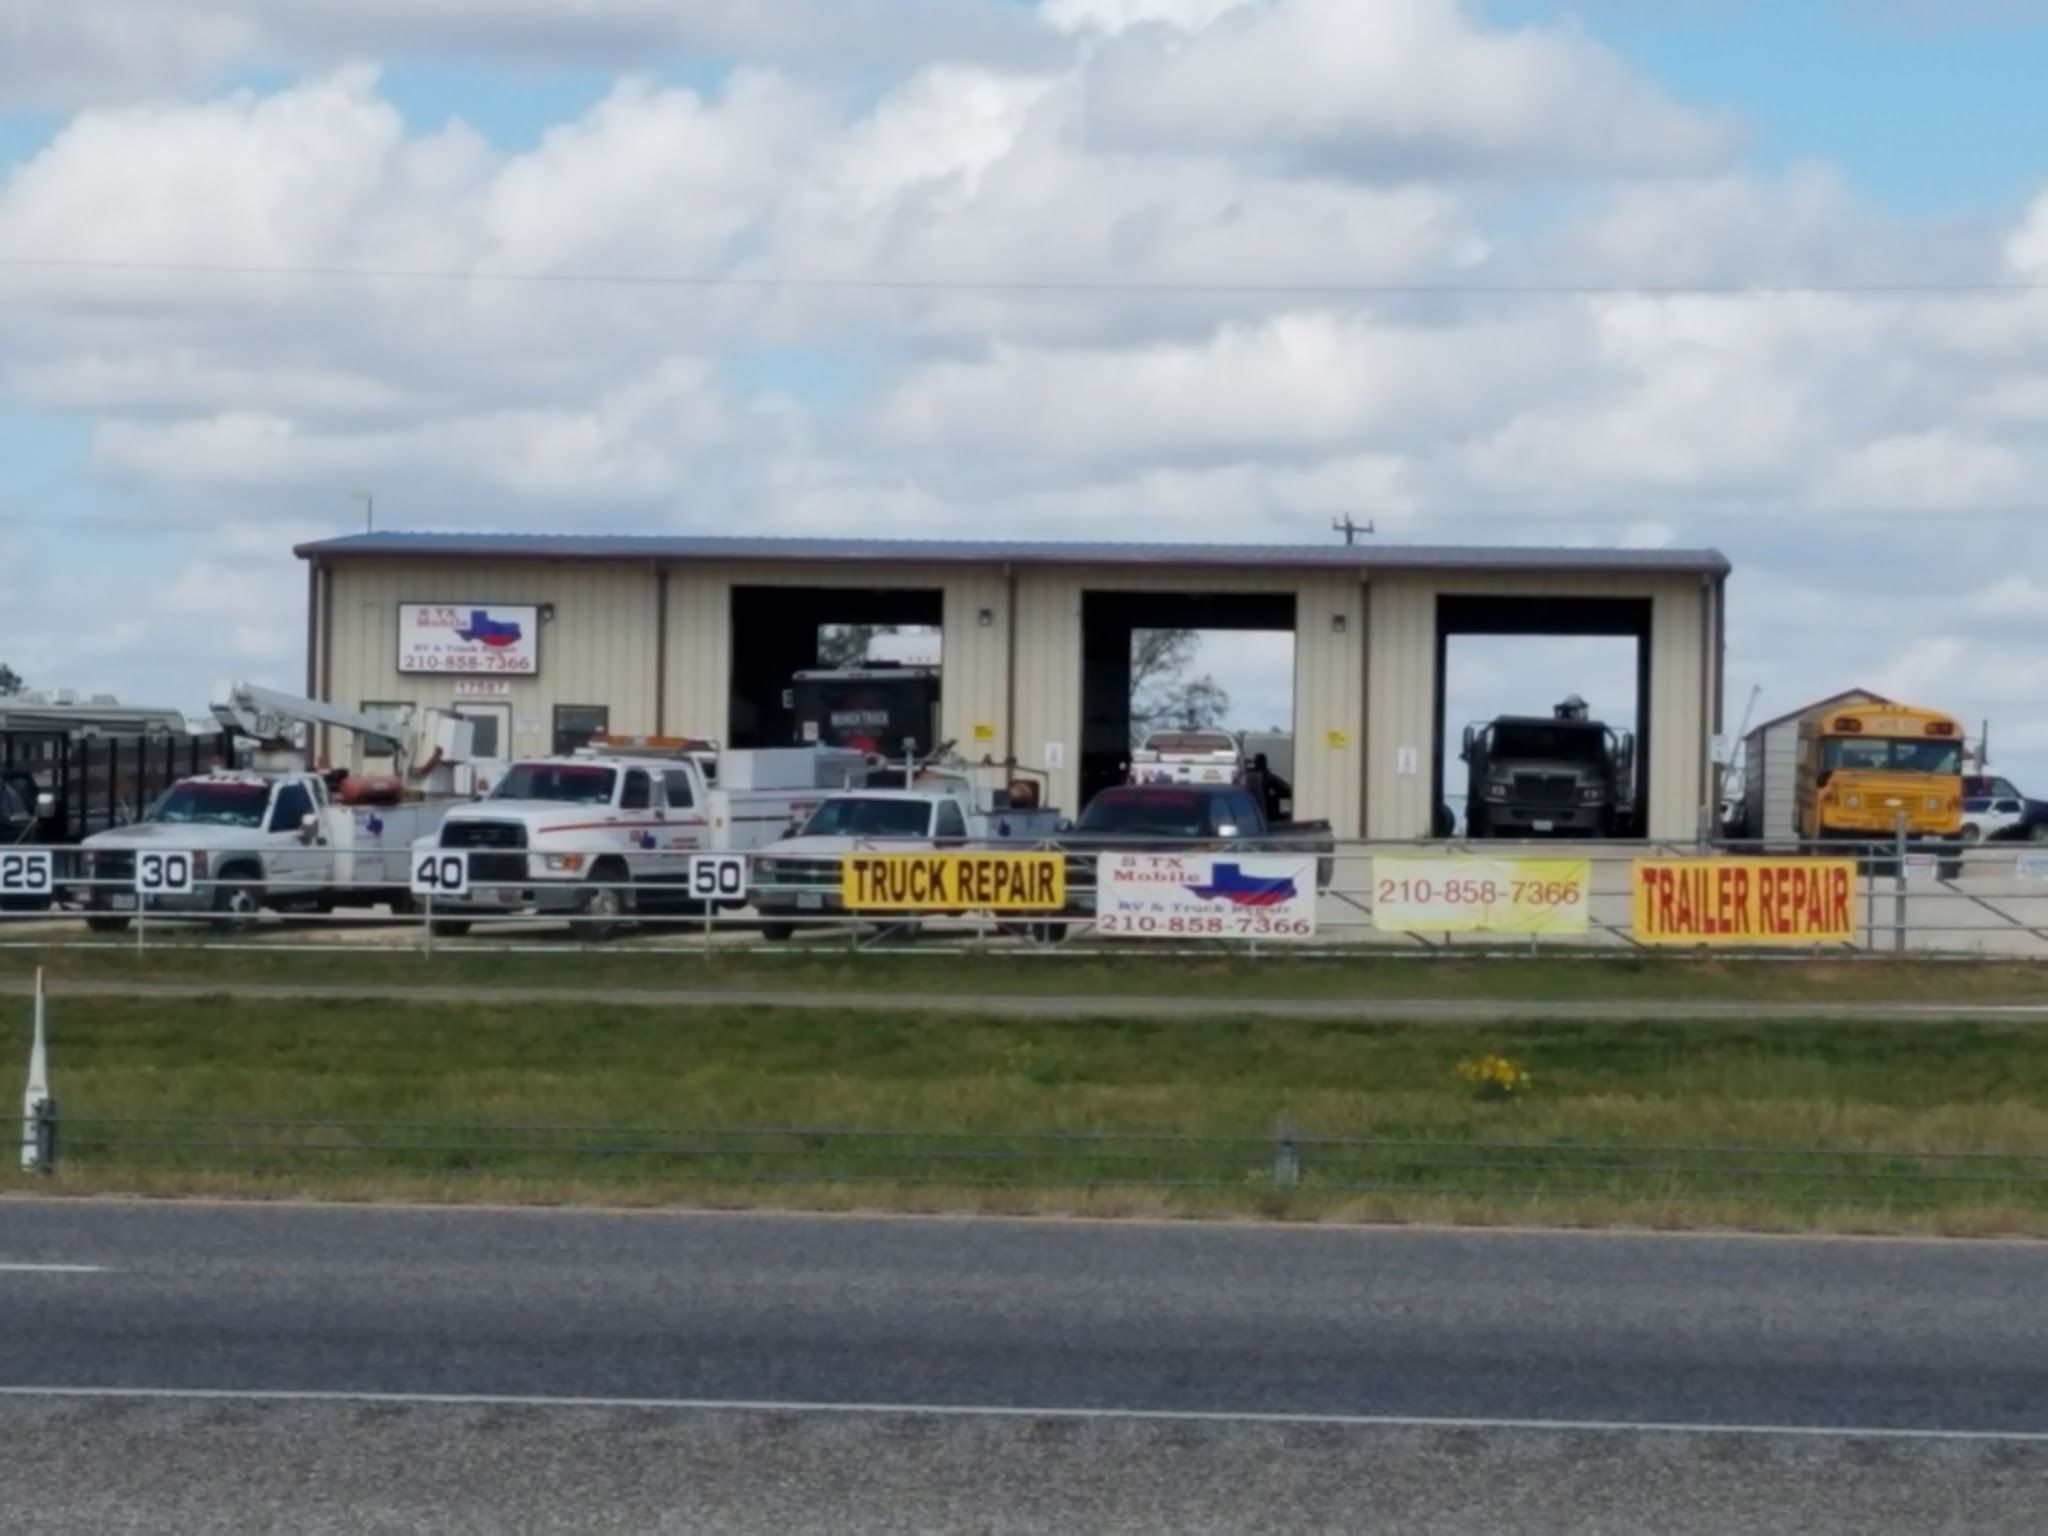 South Texas Mobile RV & Truck Repair